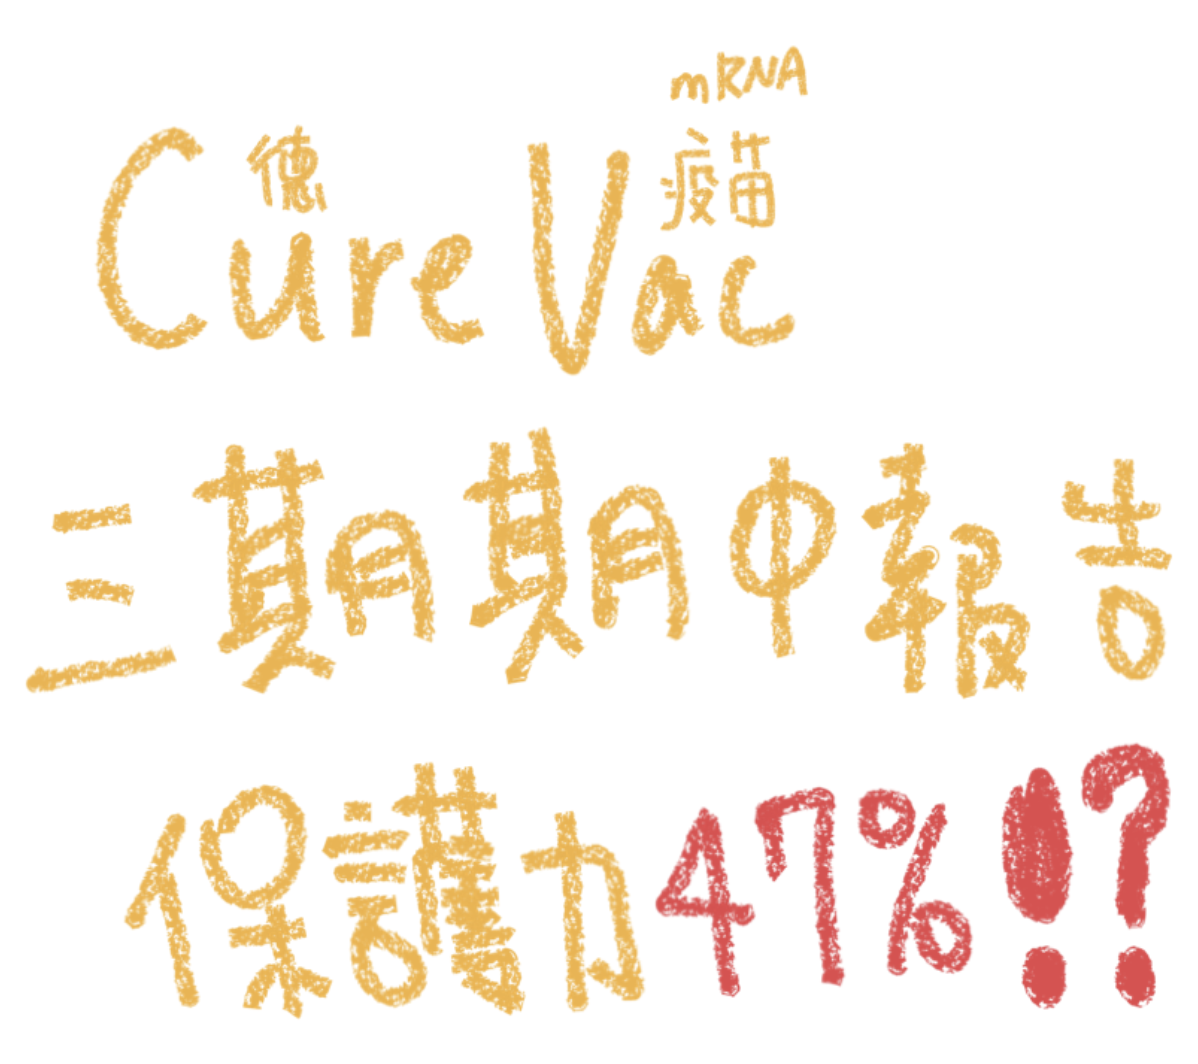 德國藥廠CureVac的mRNA新冠肺炎疫苗三期中期報告，保護力僅47% !?